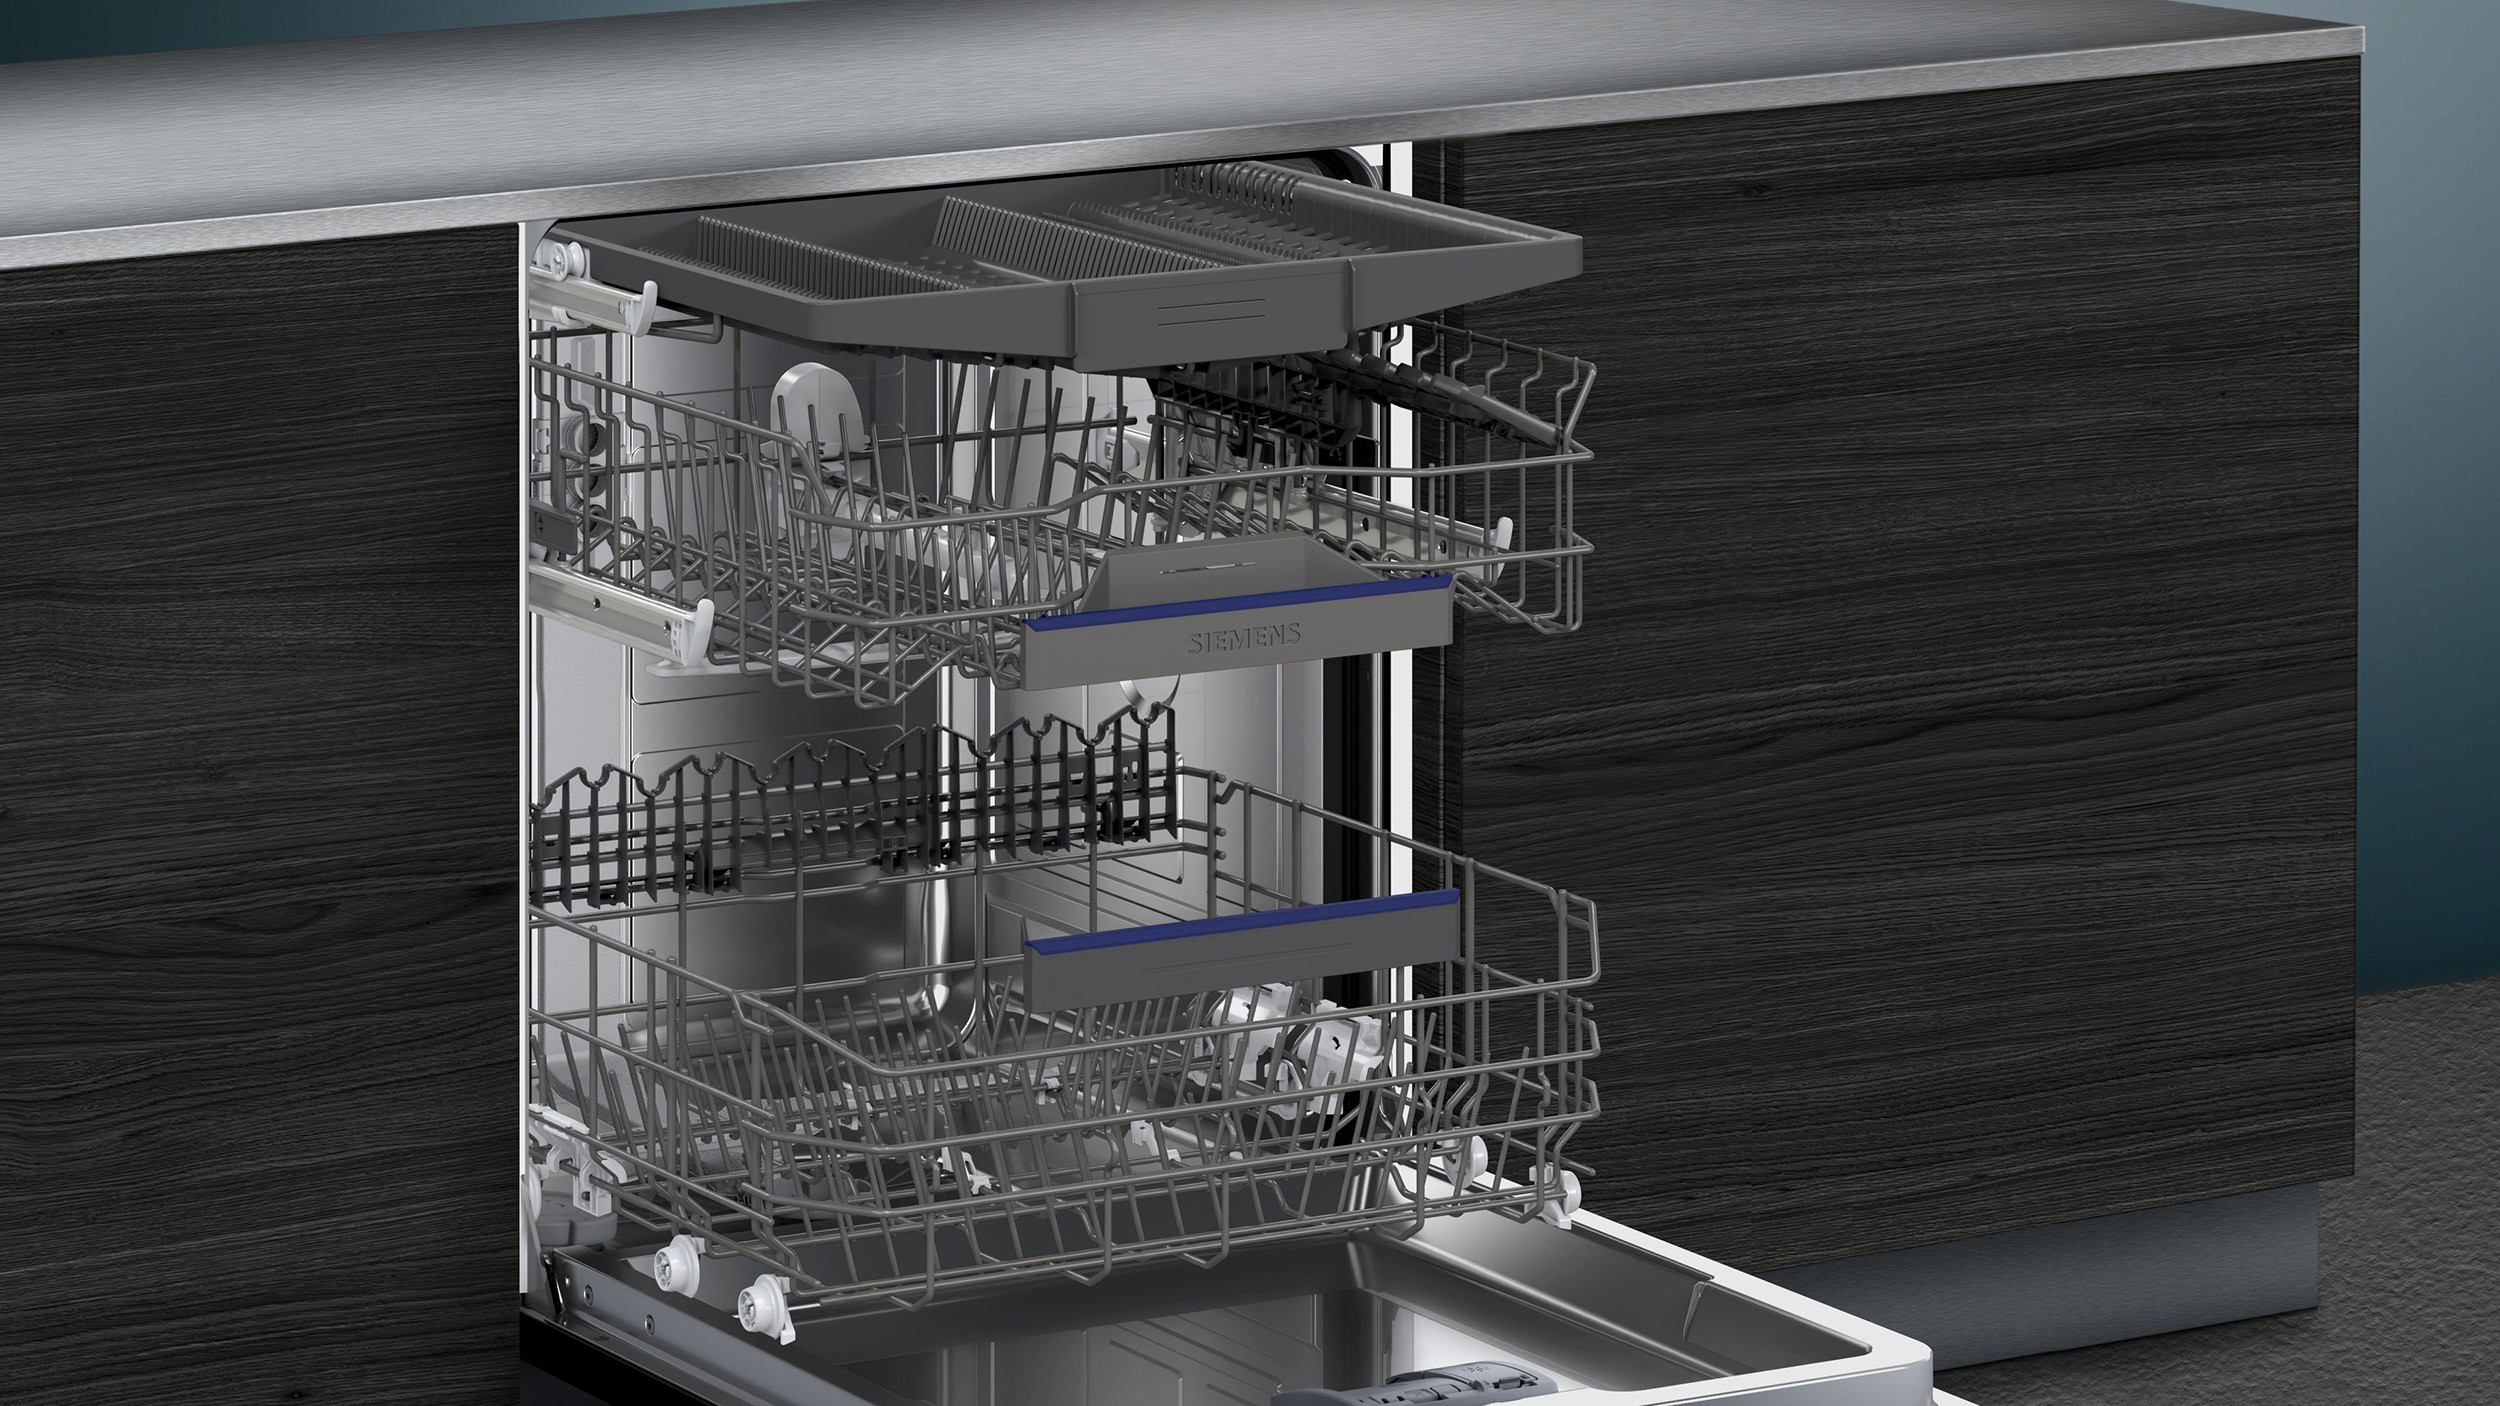 SIEMENS Lave vaisselle tout integrable 60 cm  - SX63EX01CE